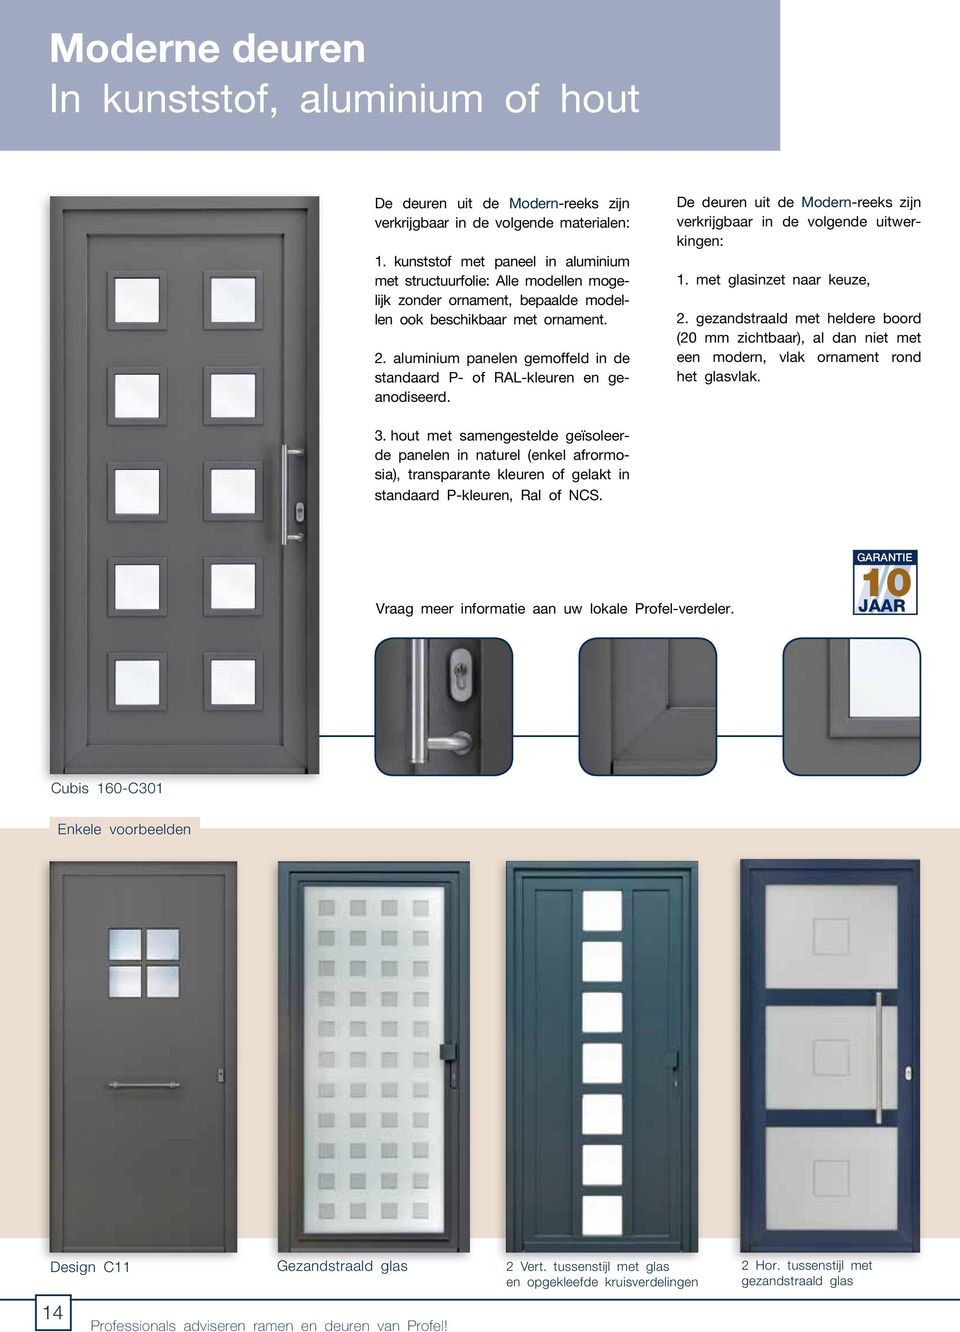 aluminium panelen gemoffeld in de standaard P- of RAL-kleuren en geanodiseerd. De deuren uit de Modern-reeks zijn verkrijgbaar in de volgende uitwerkingen: 1. met glasinzet naar keuze, 2.